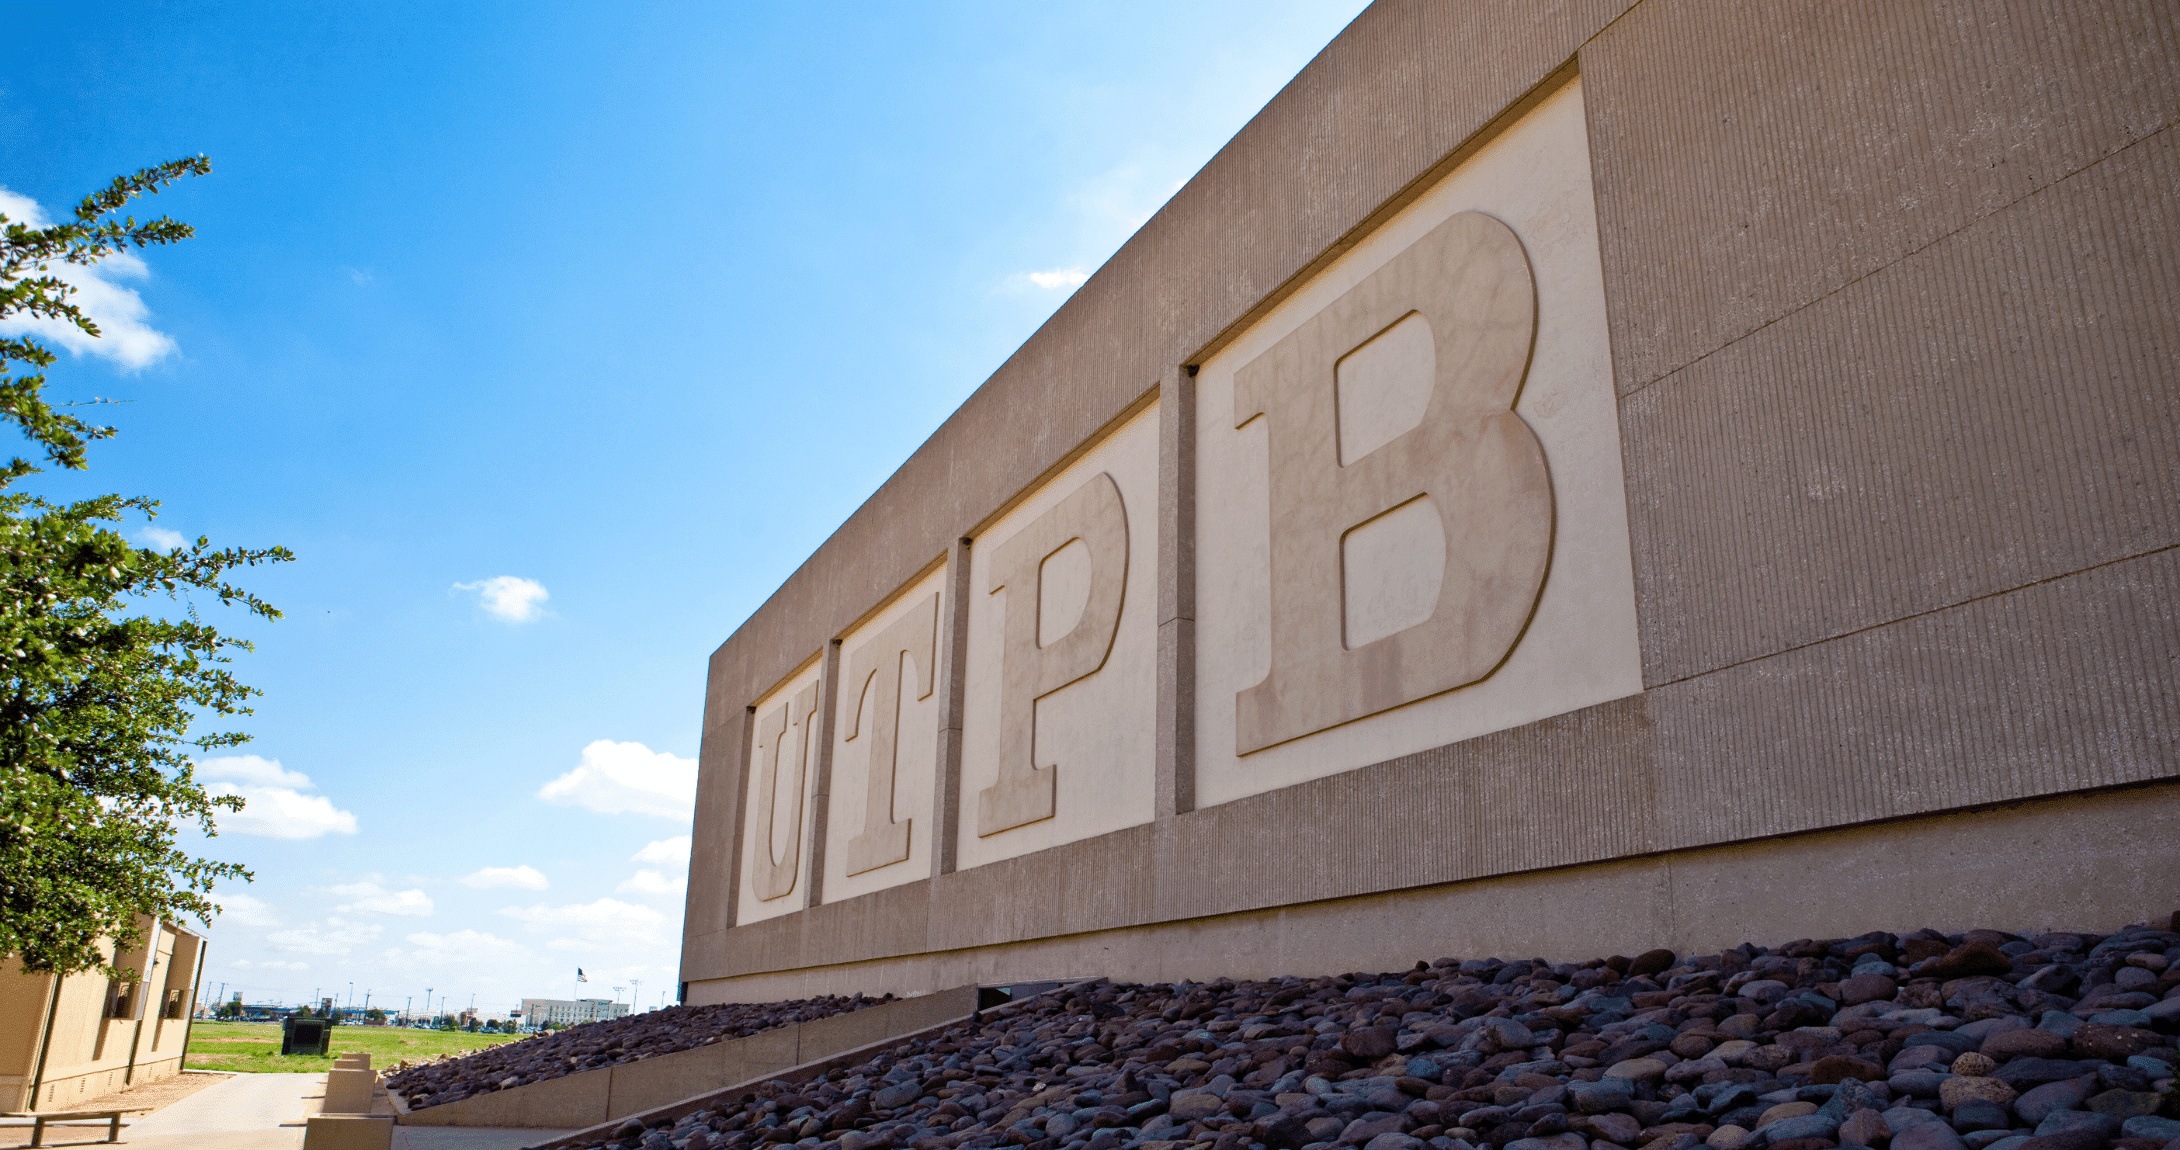 Letras UTPB en el costado de un edificio